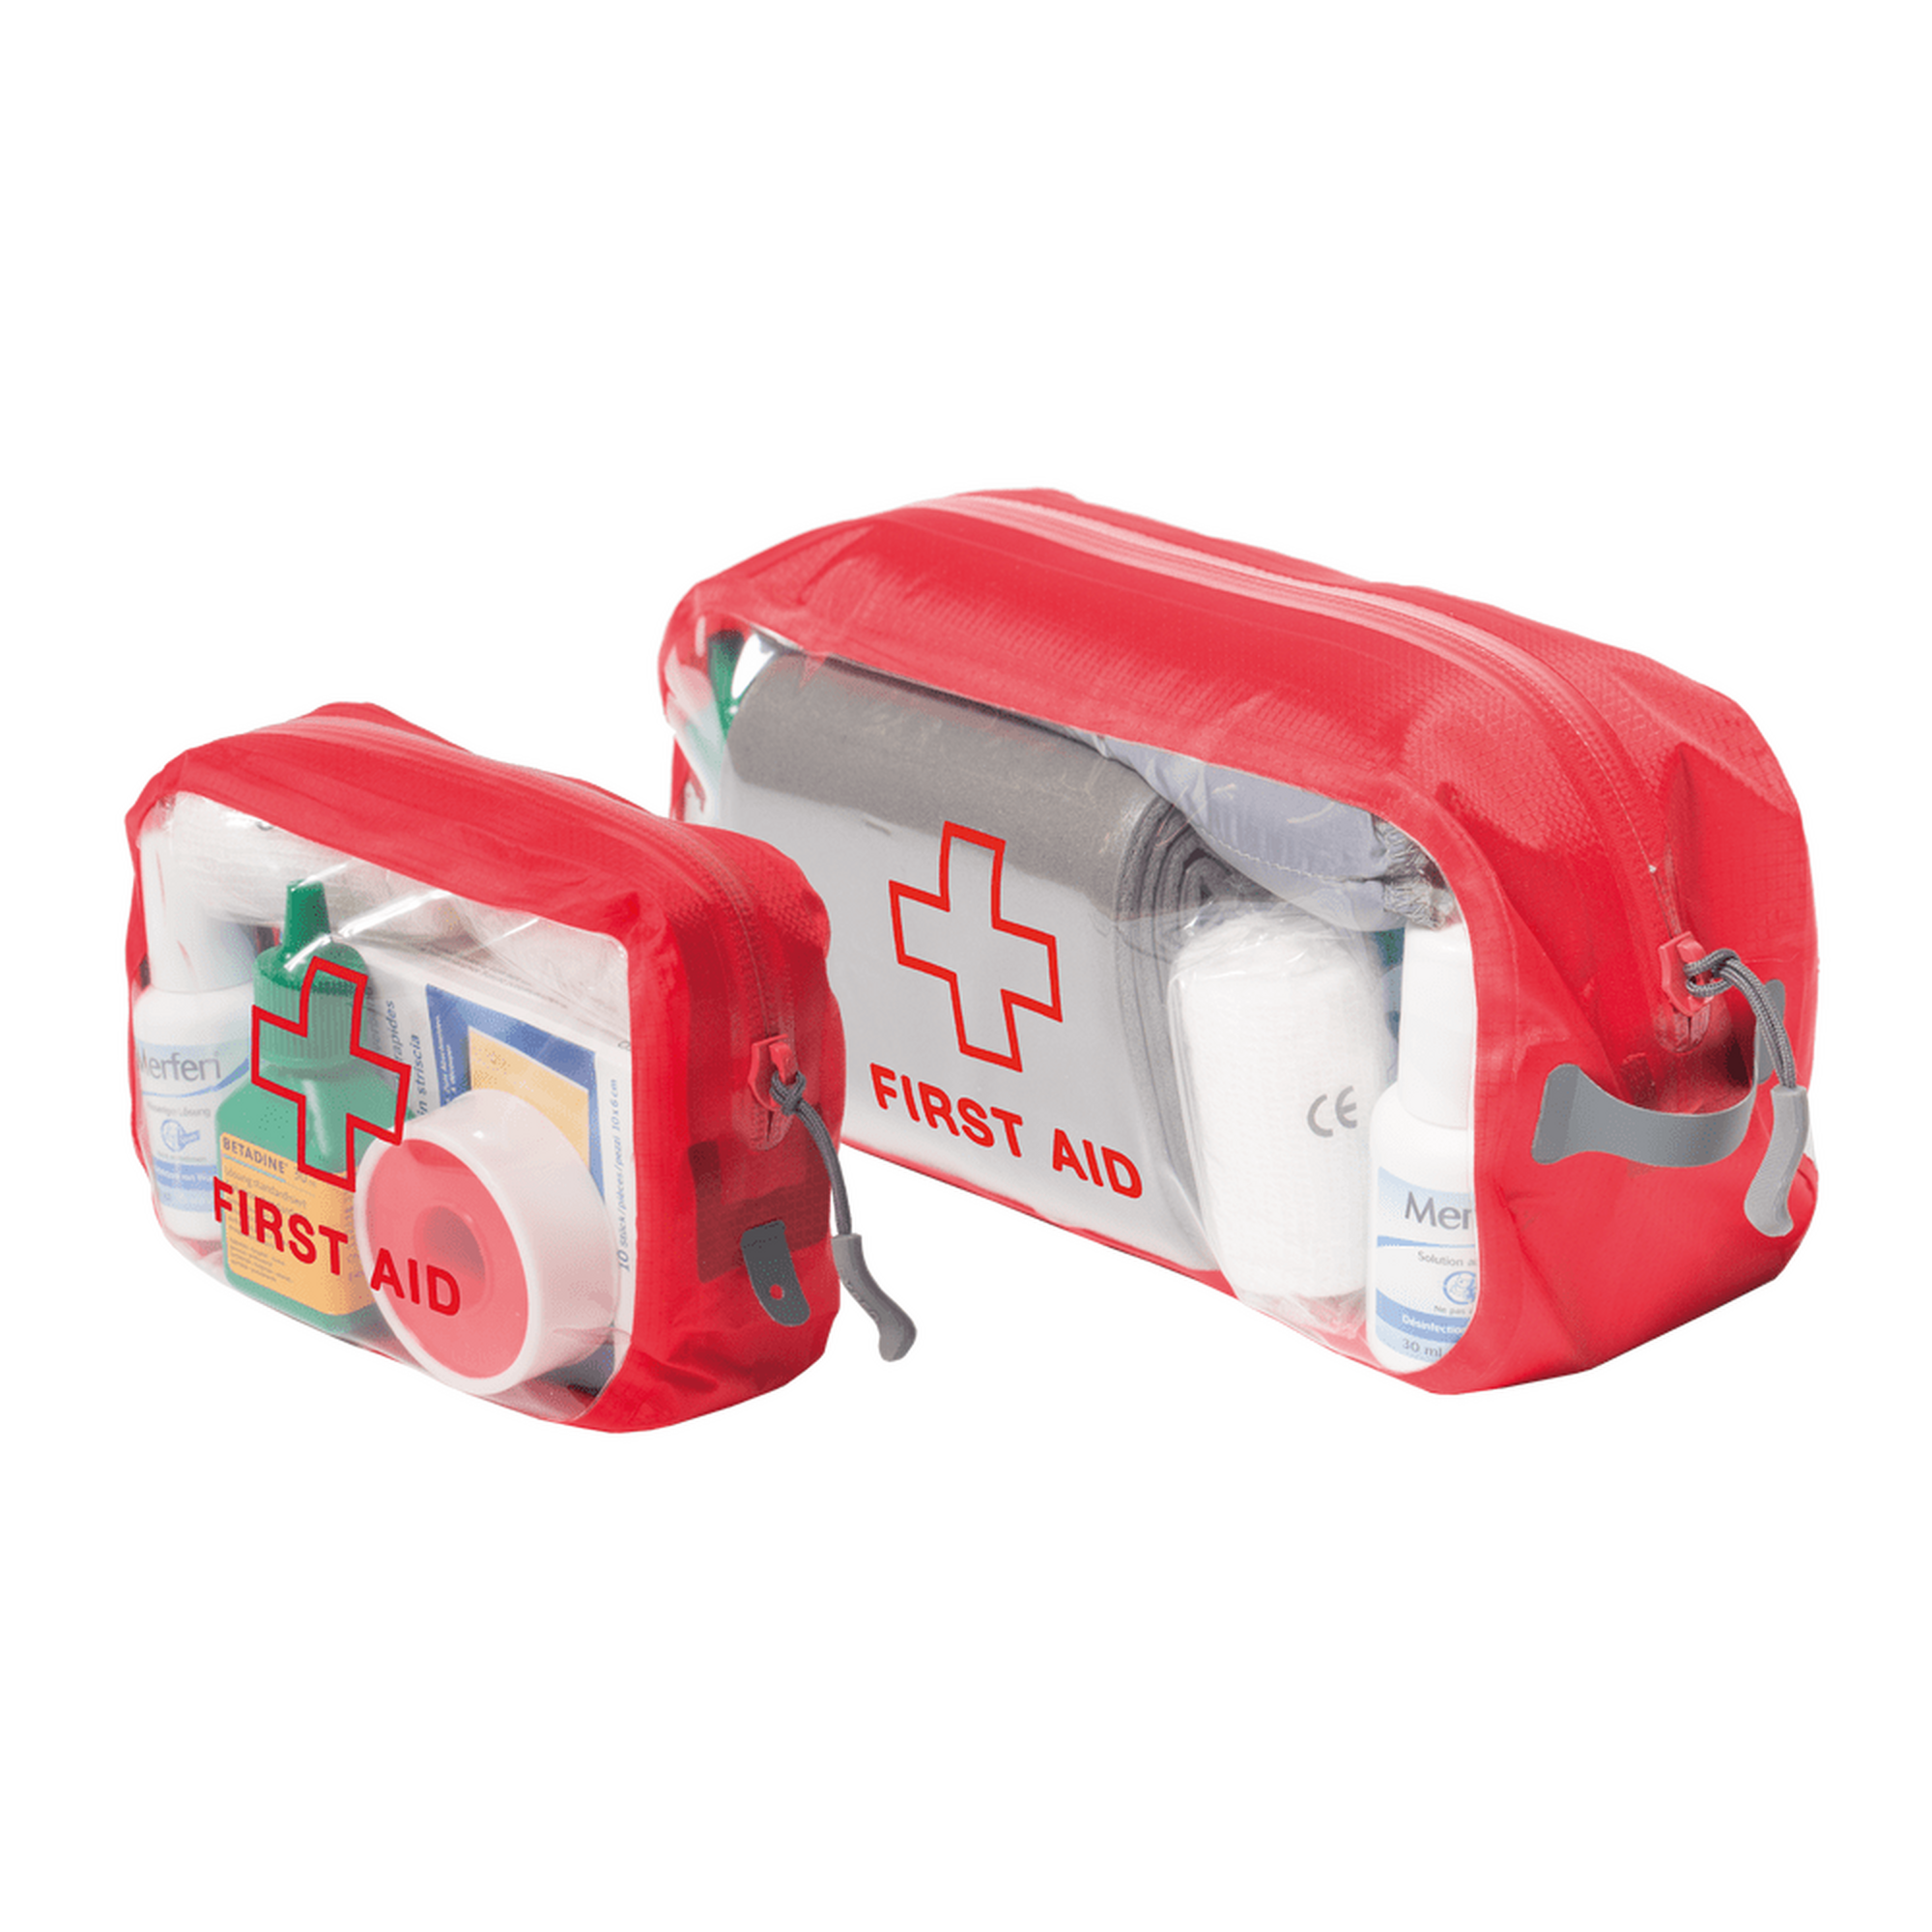 First Aid Kits – Das muss dabei sein